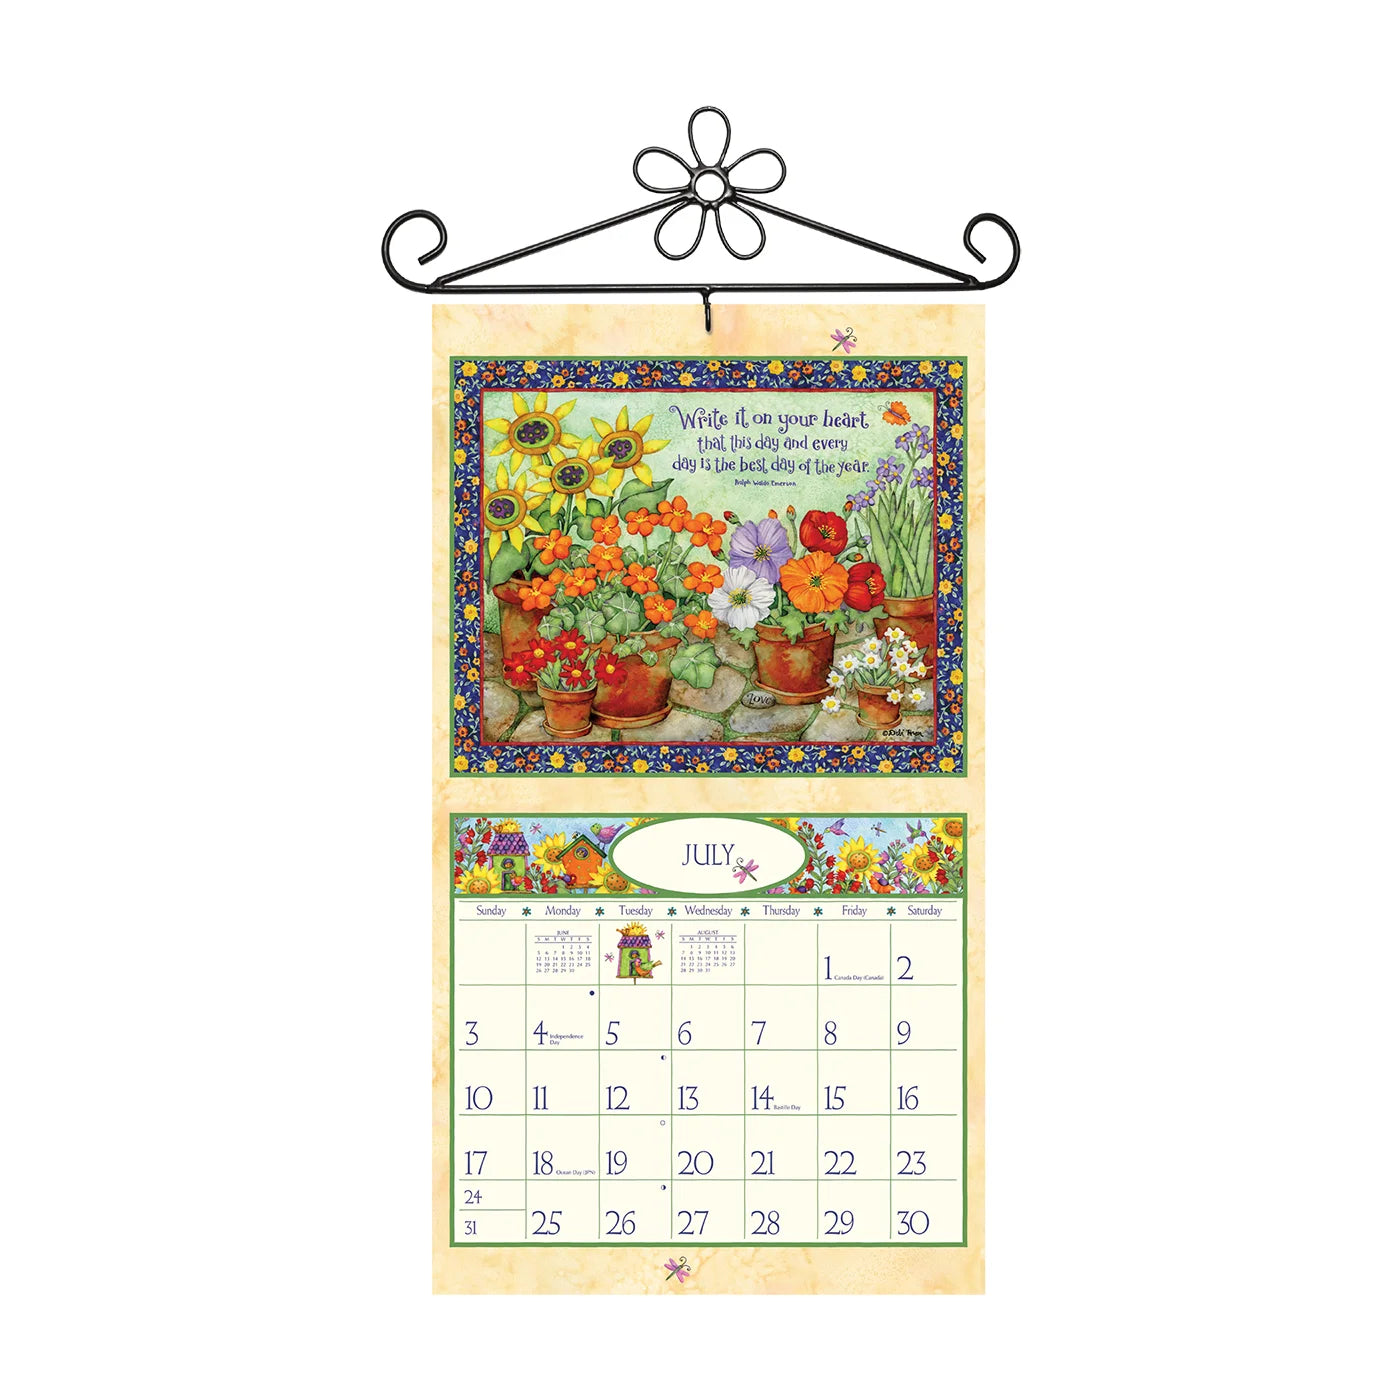 LANG Flower Calendar Wall Hanger (Fits All Wall Calendars) Calendar